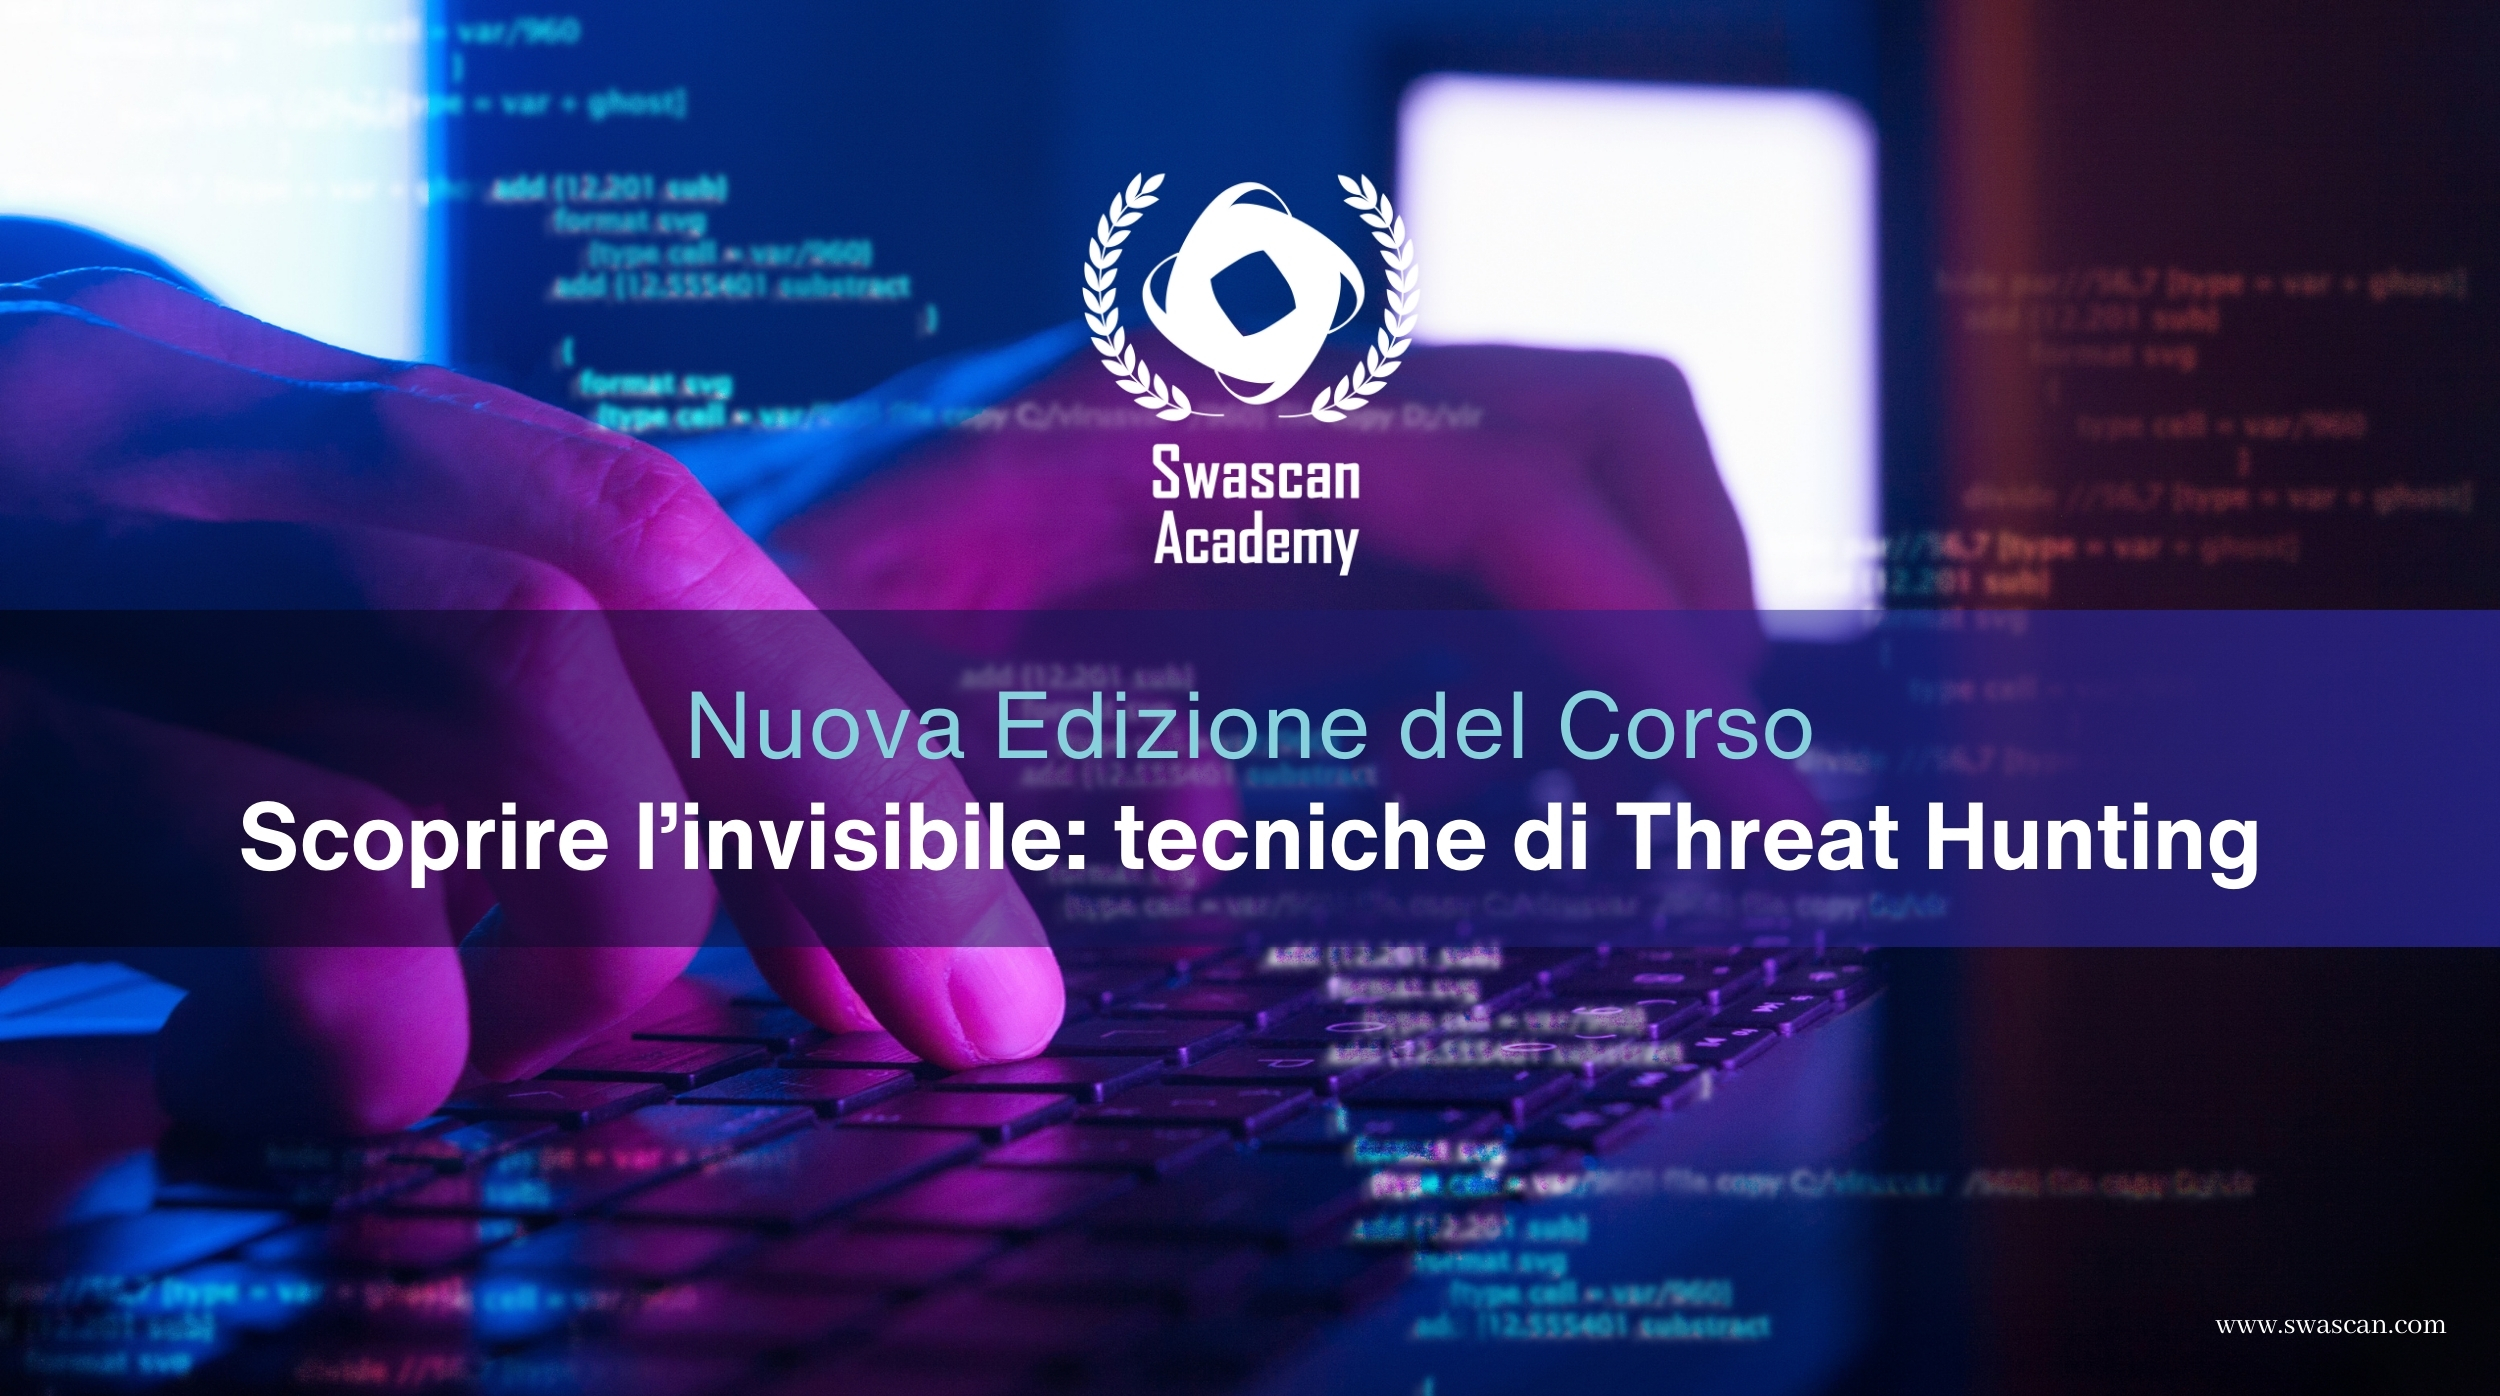 Nuova Edizione del Corso “Scoprire l’invisibile: tecniche di Threat Hunting”